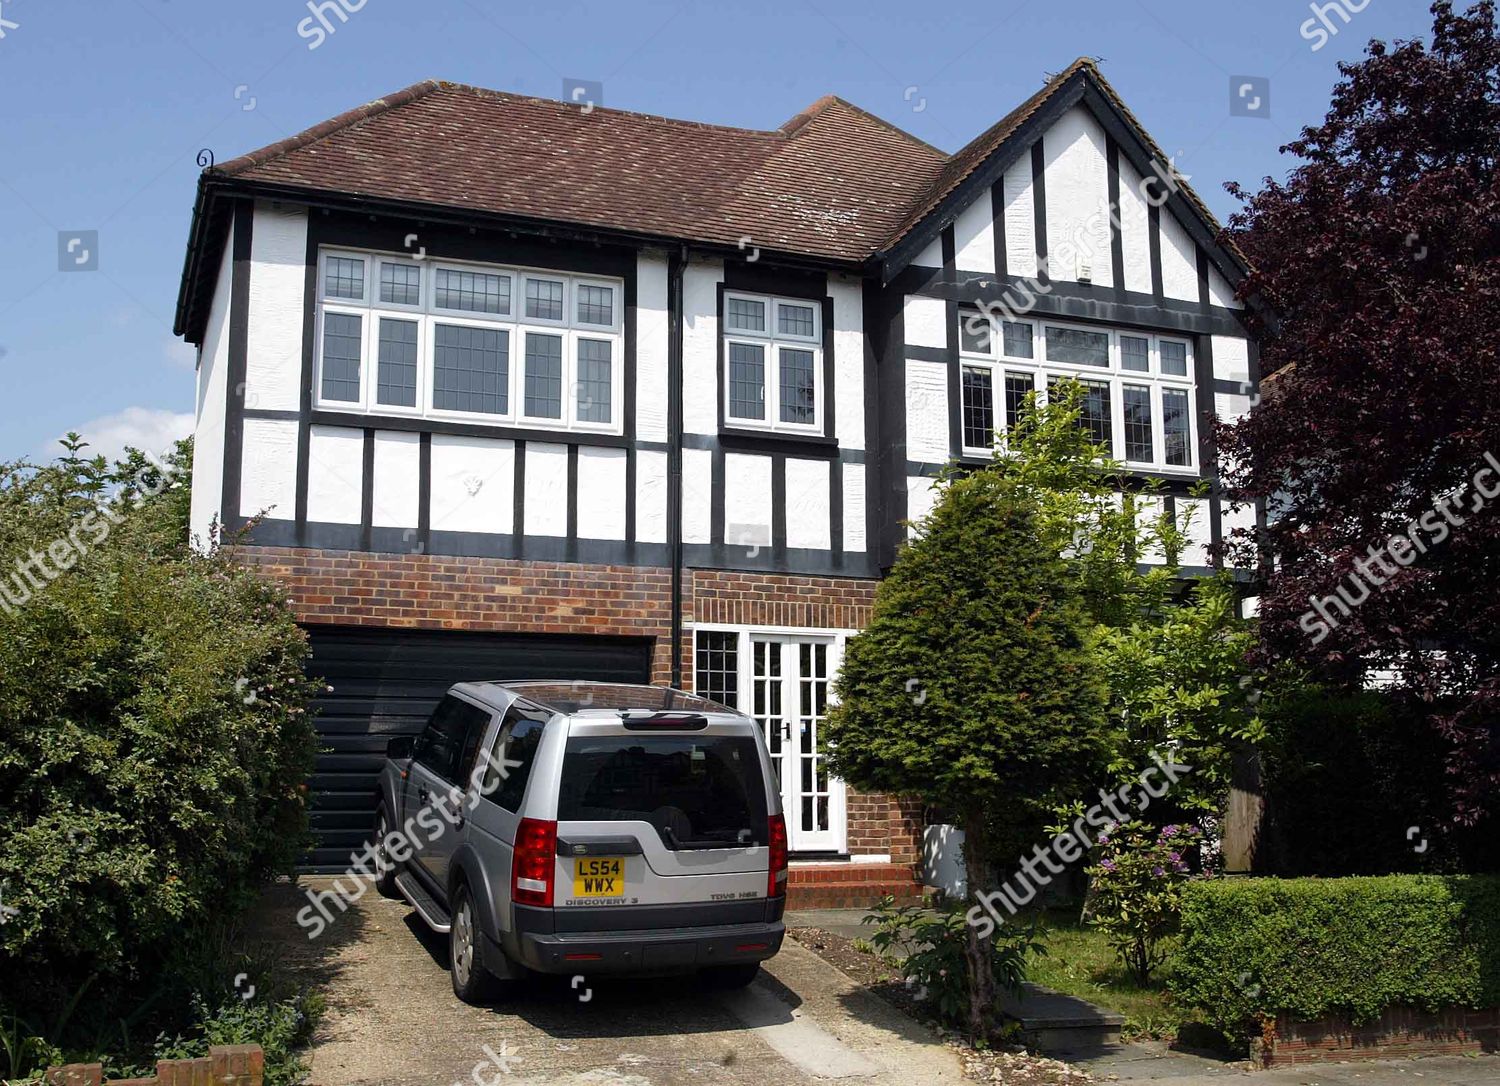 Foto: huis/woning van in London, United Kingdom